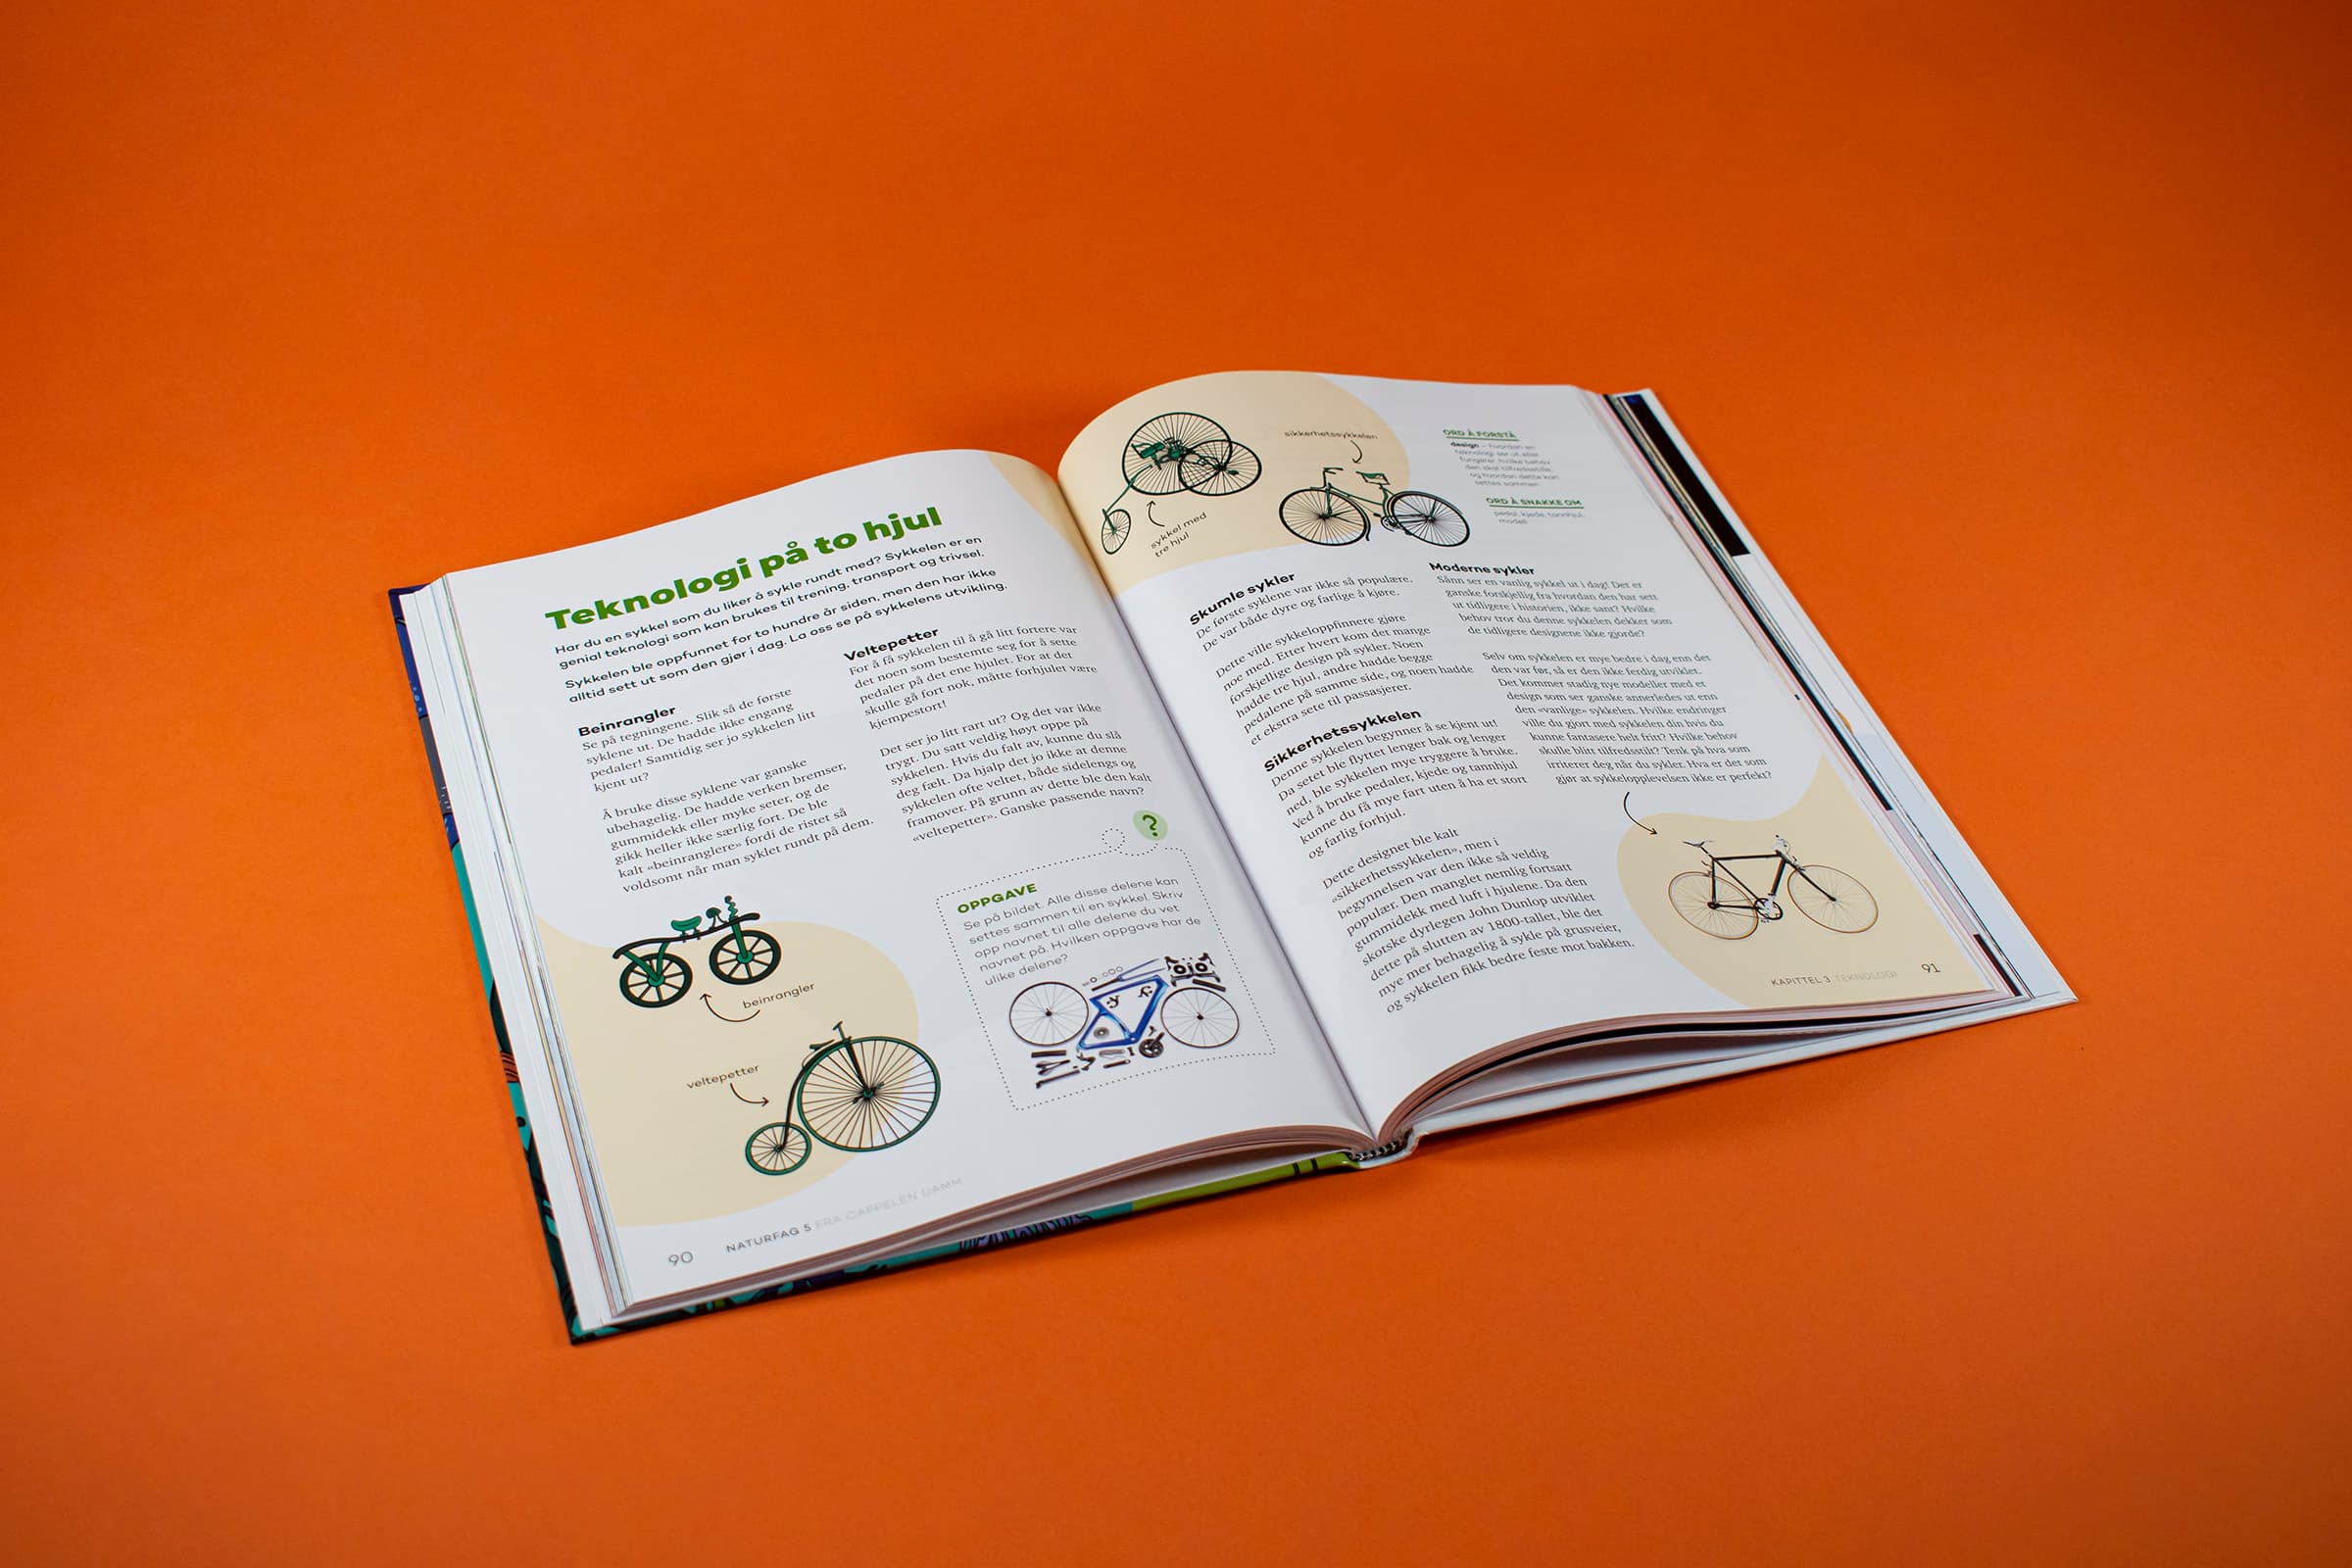 Bildet viser et oppslag i boken om sykler.